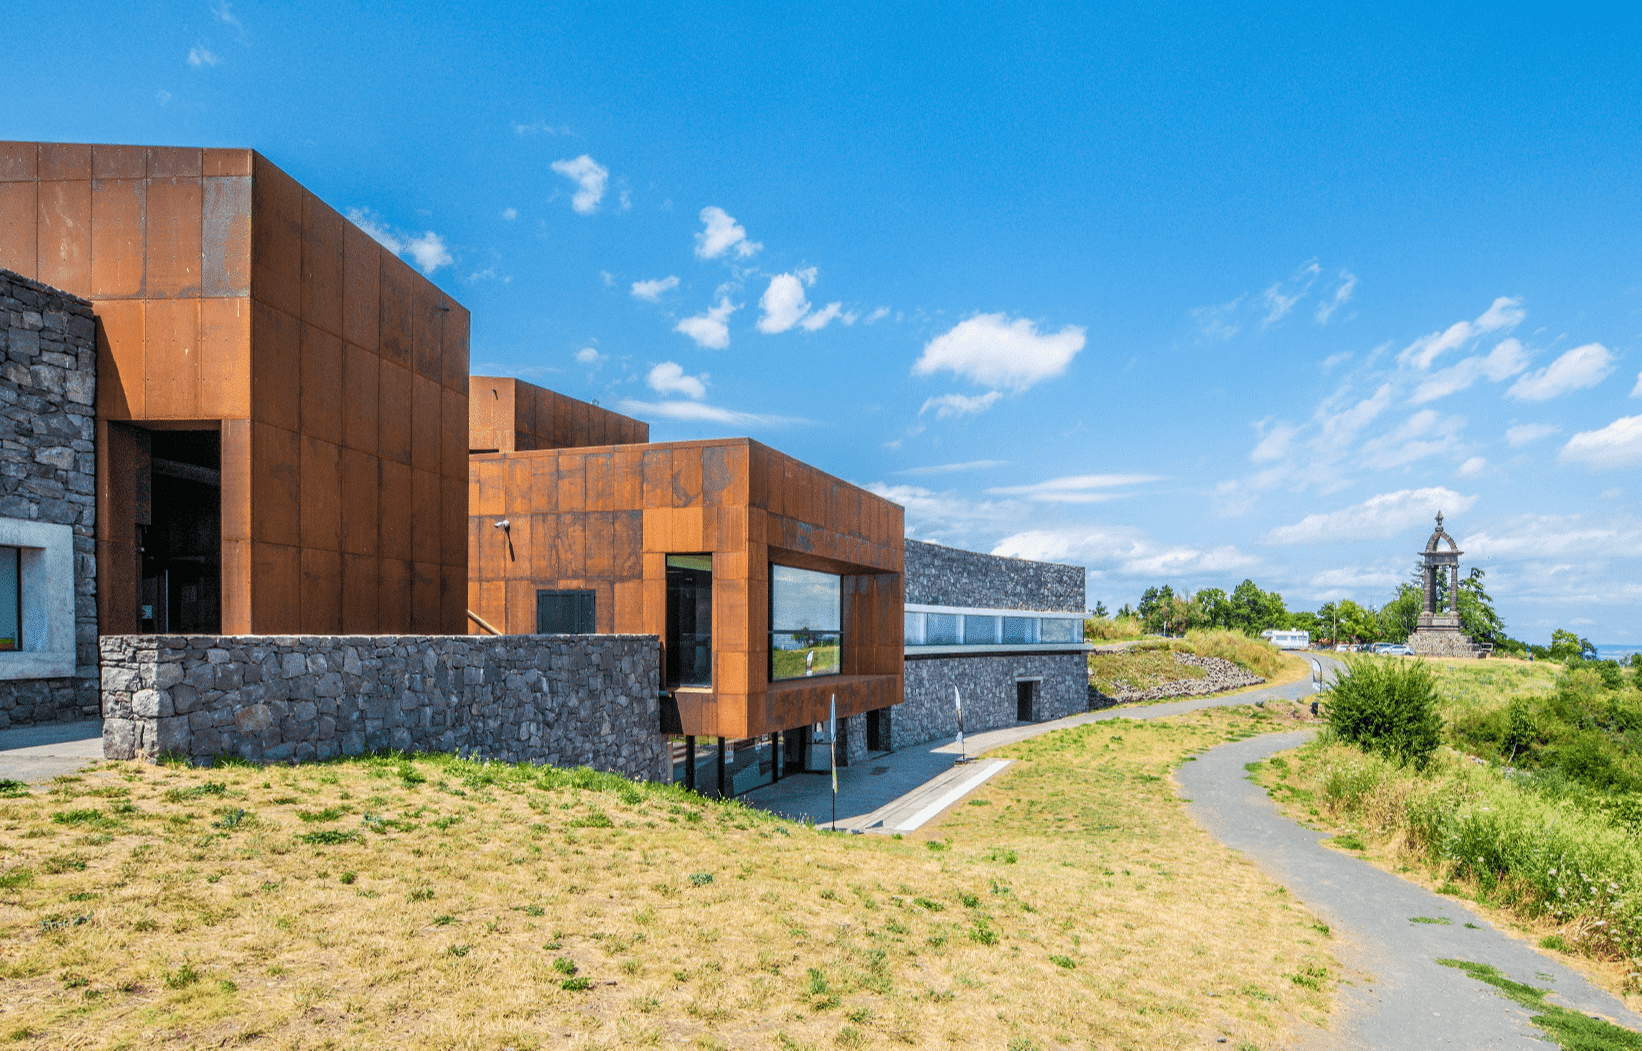 Le musée Archéologique De La Bataille De Gergovie est un lieu épuré et contemporain, offrant une vue à couper le souffle sur les paysages d'Auvergne